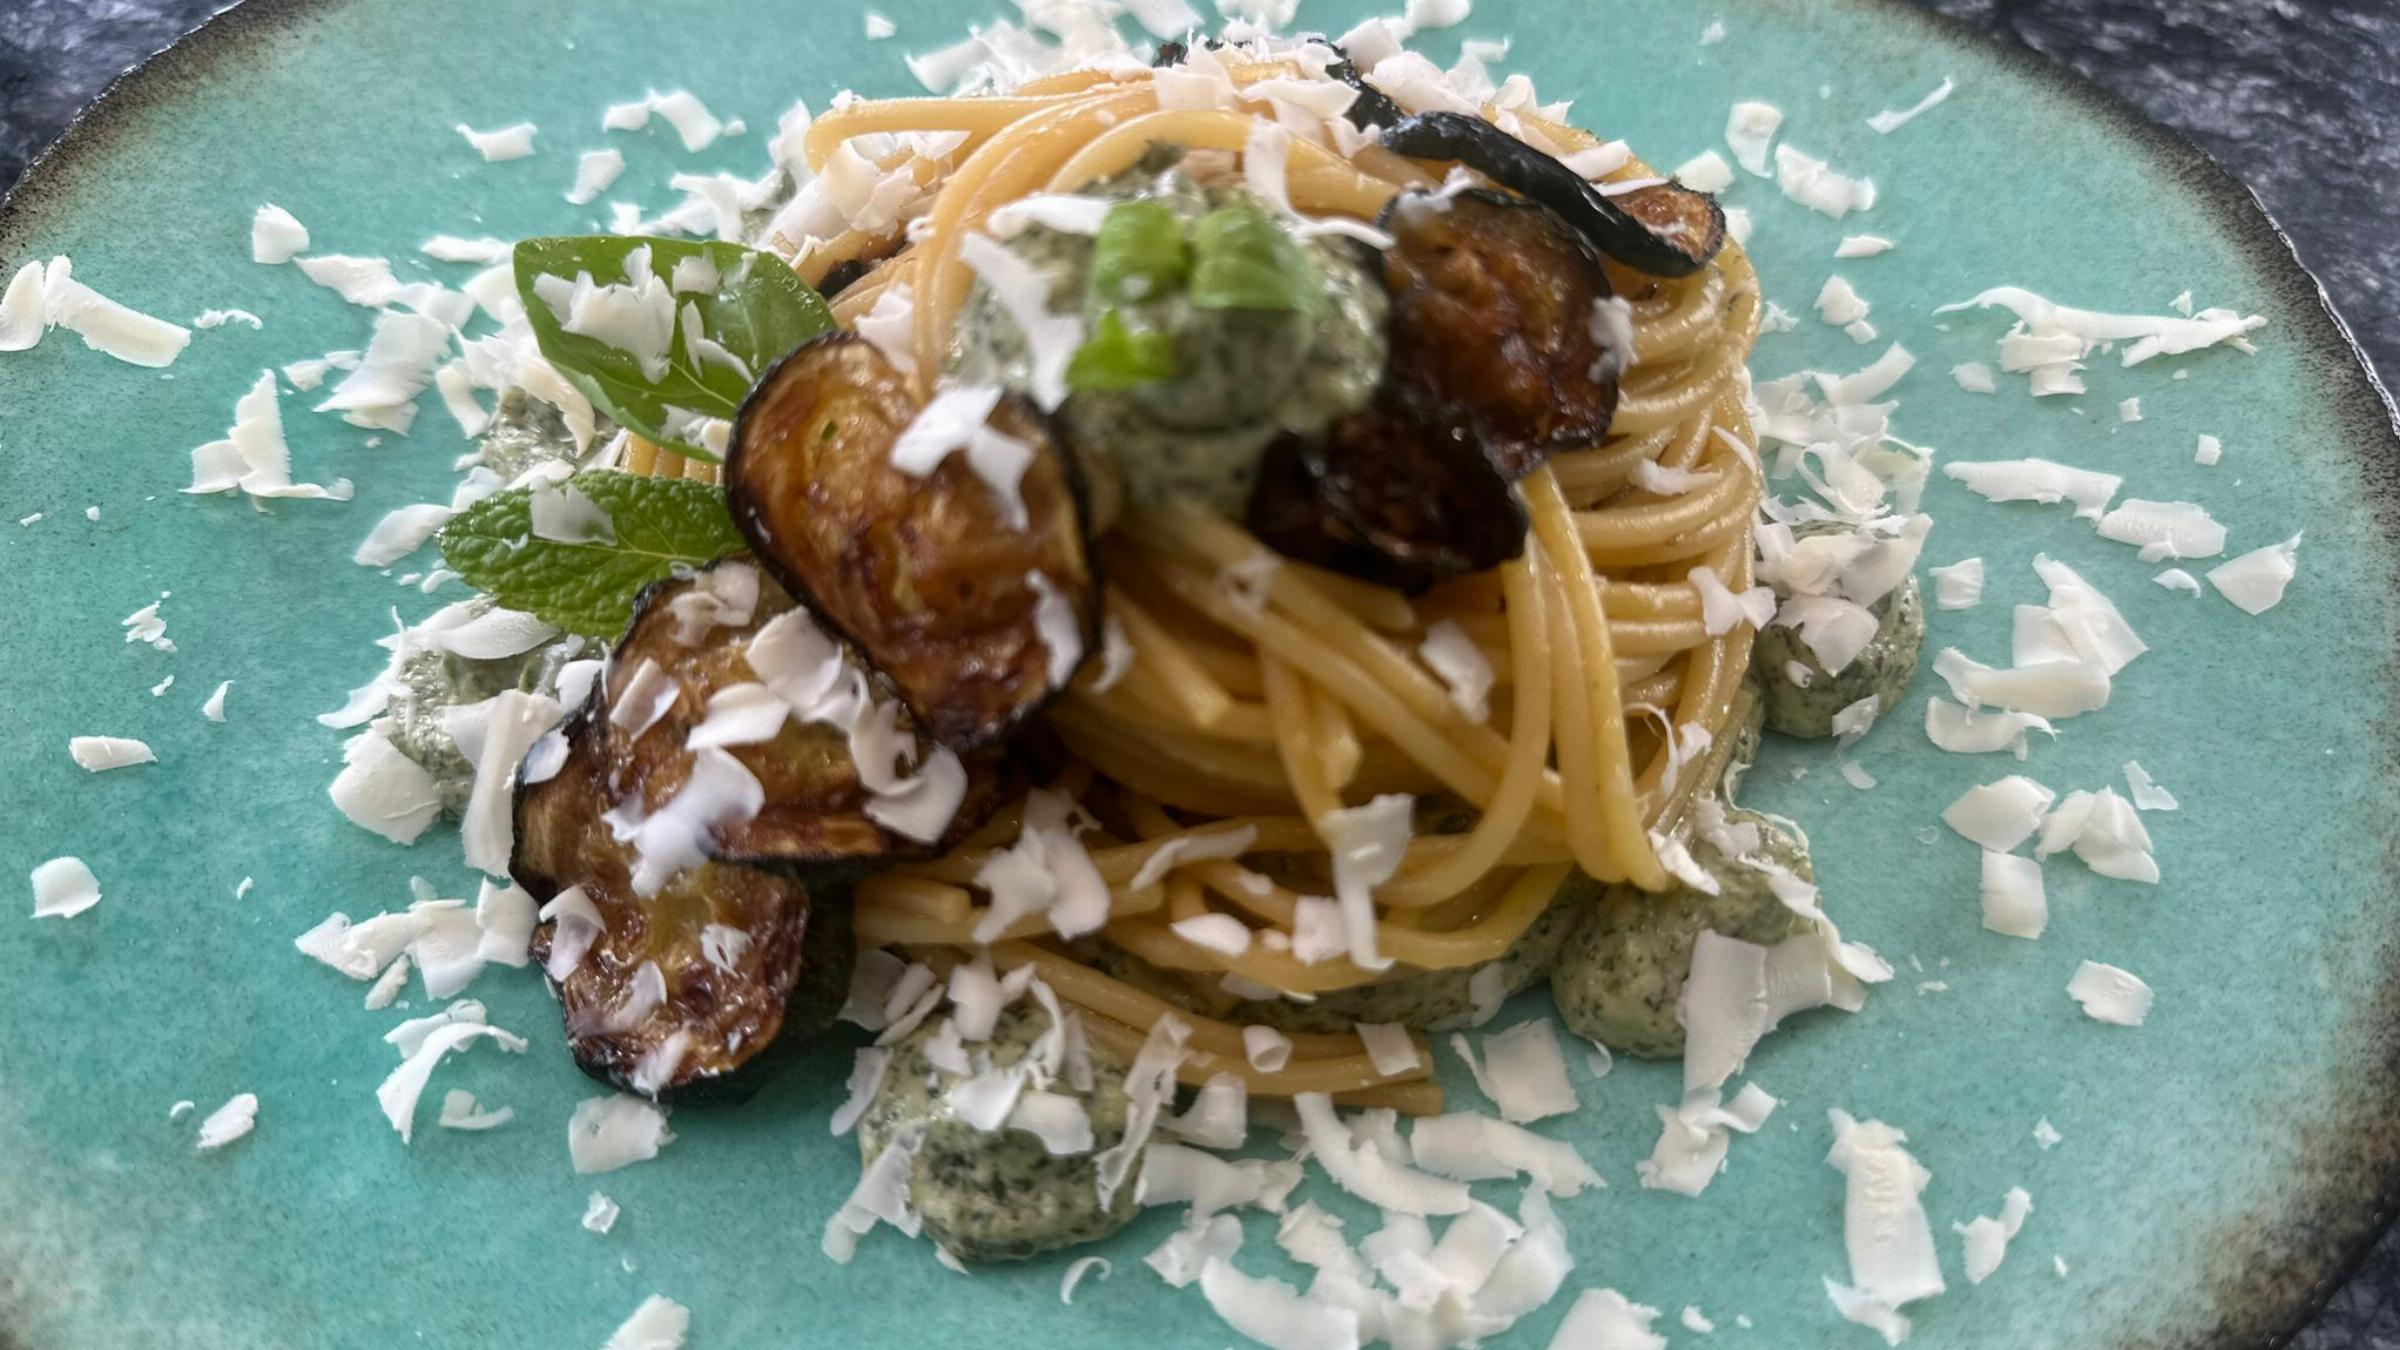 La recette du week-end : Spaghetti de courgettes crème, basilic et menthe